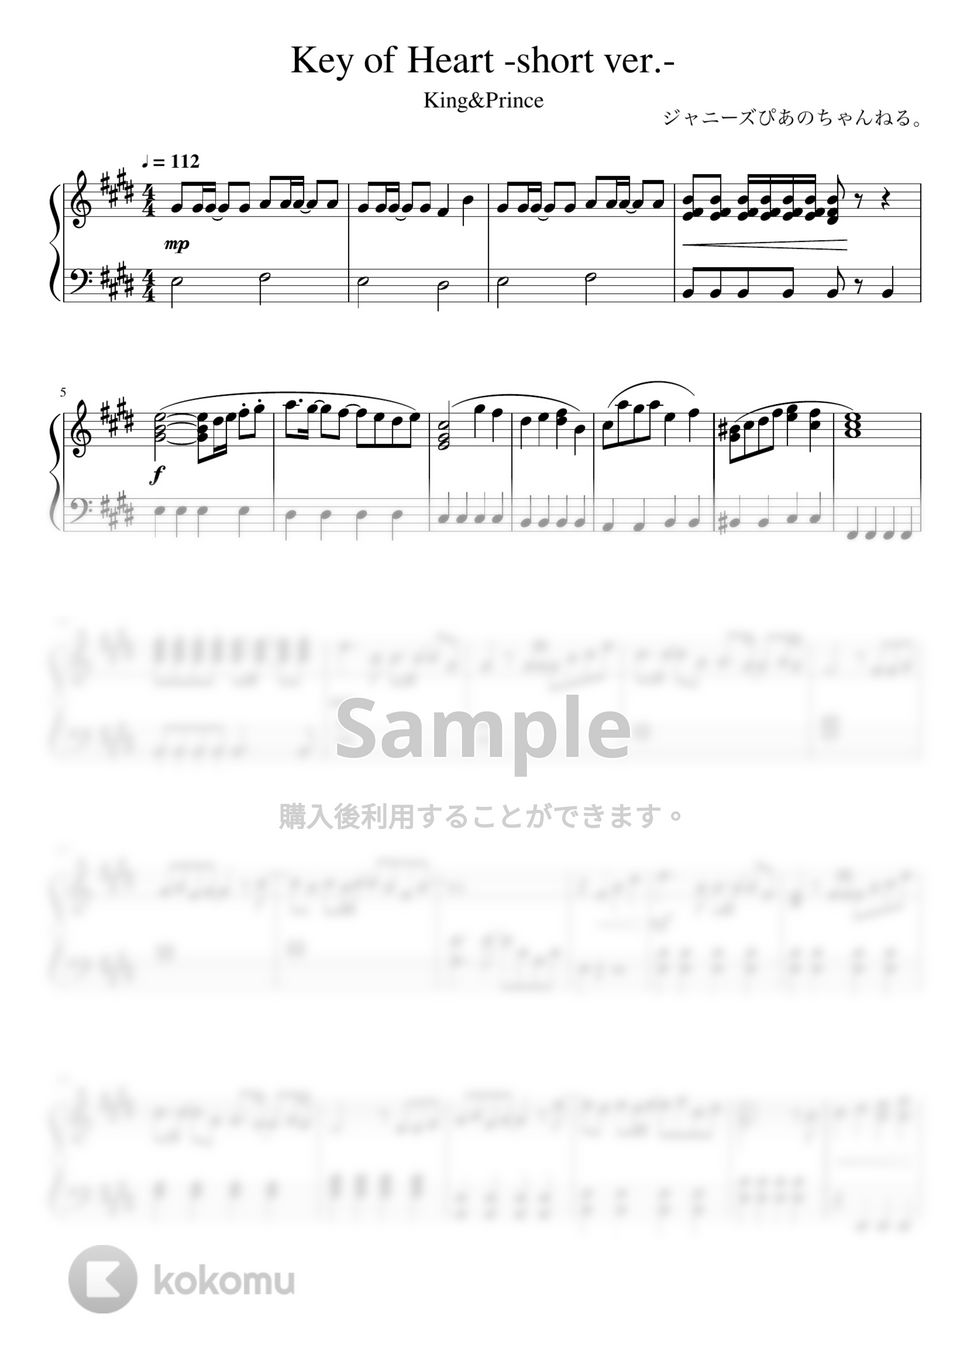 King & Prince - Key of Heart (ピアノソロ / アイドル / ジャニーズ) by ジャニーズぴあのちゃんねる。